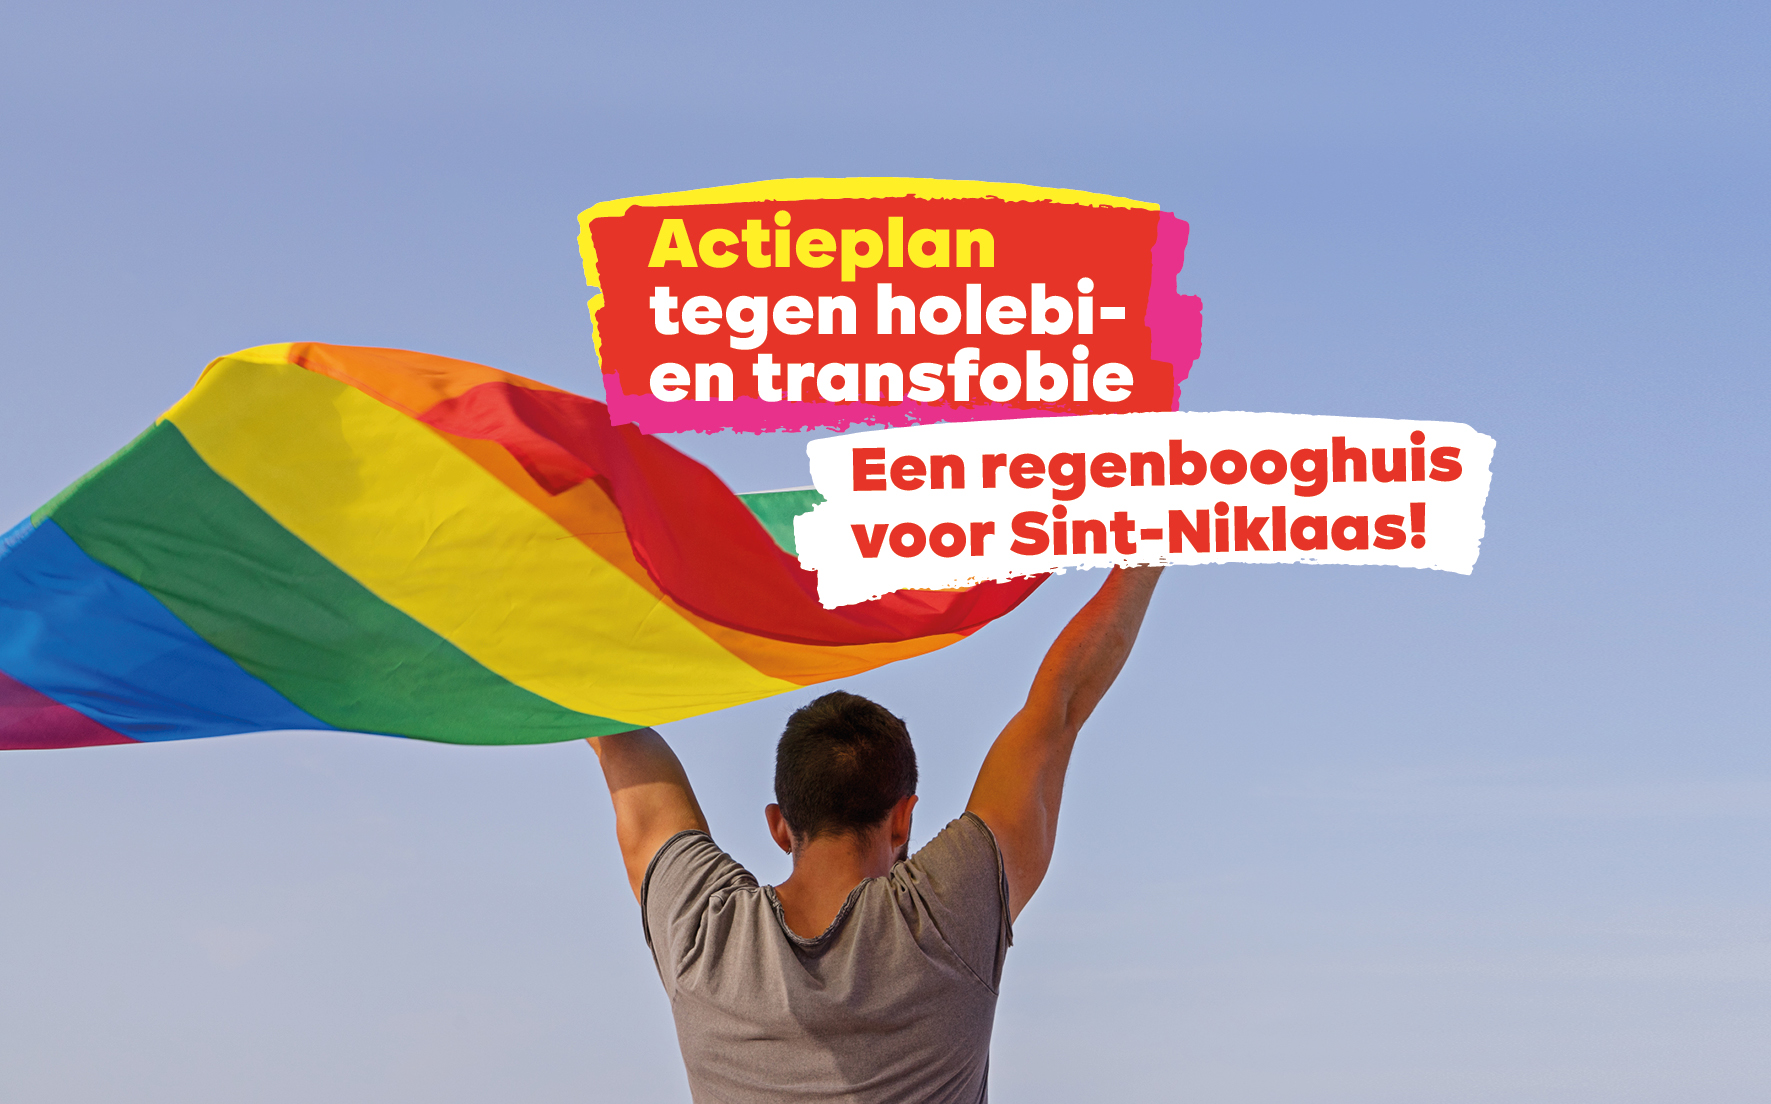 PVDA stelt actieplan voor tegen holebi- en transfobie: oprichting Regenbooghuis zou krachtig signaal zijn.